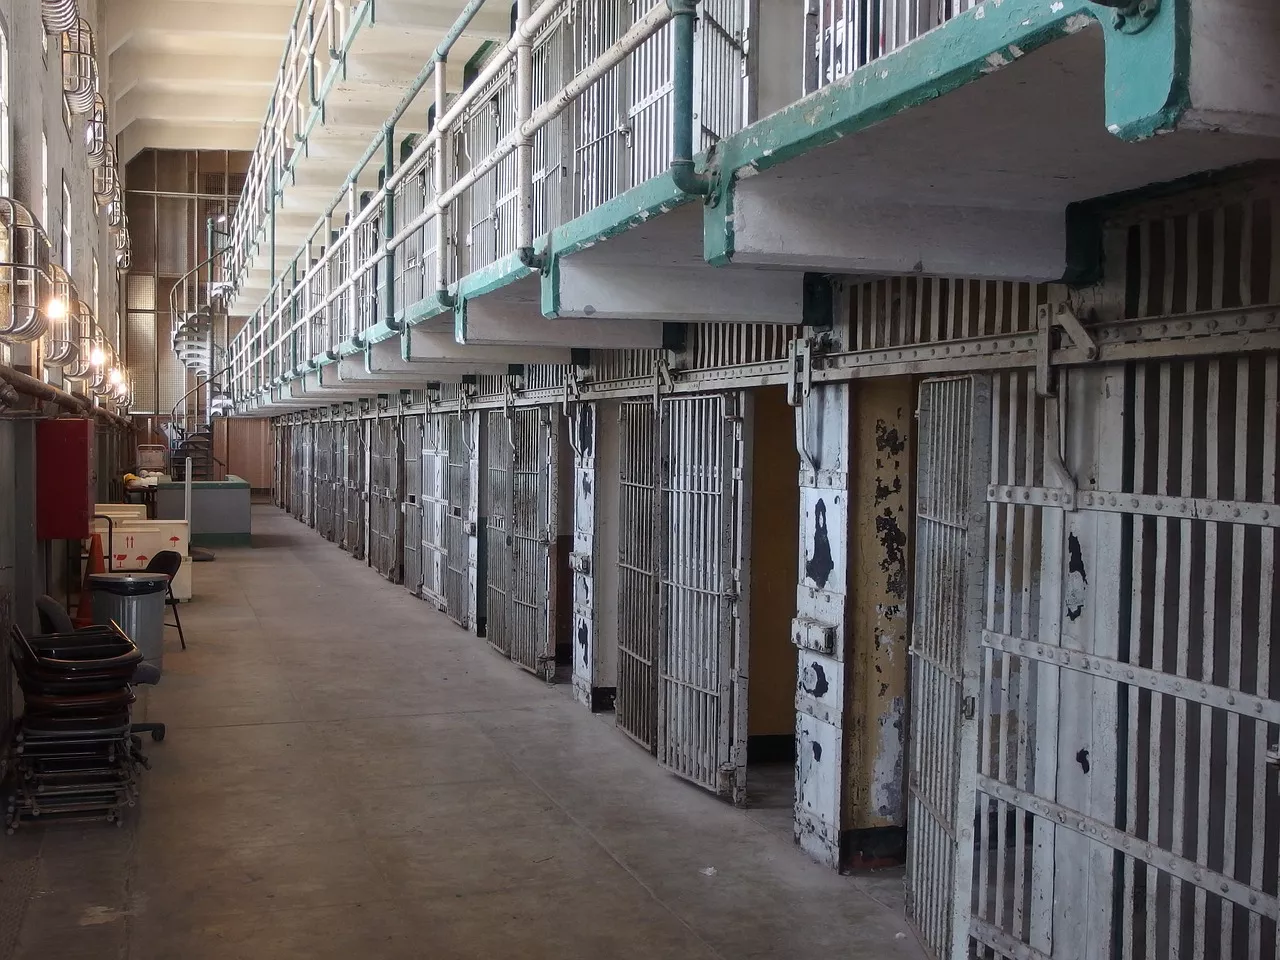 Esperimento alla Bicocca: 5 minuti in una cella finta per capire le reali condizioni dei detenuti